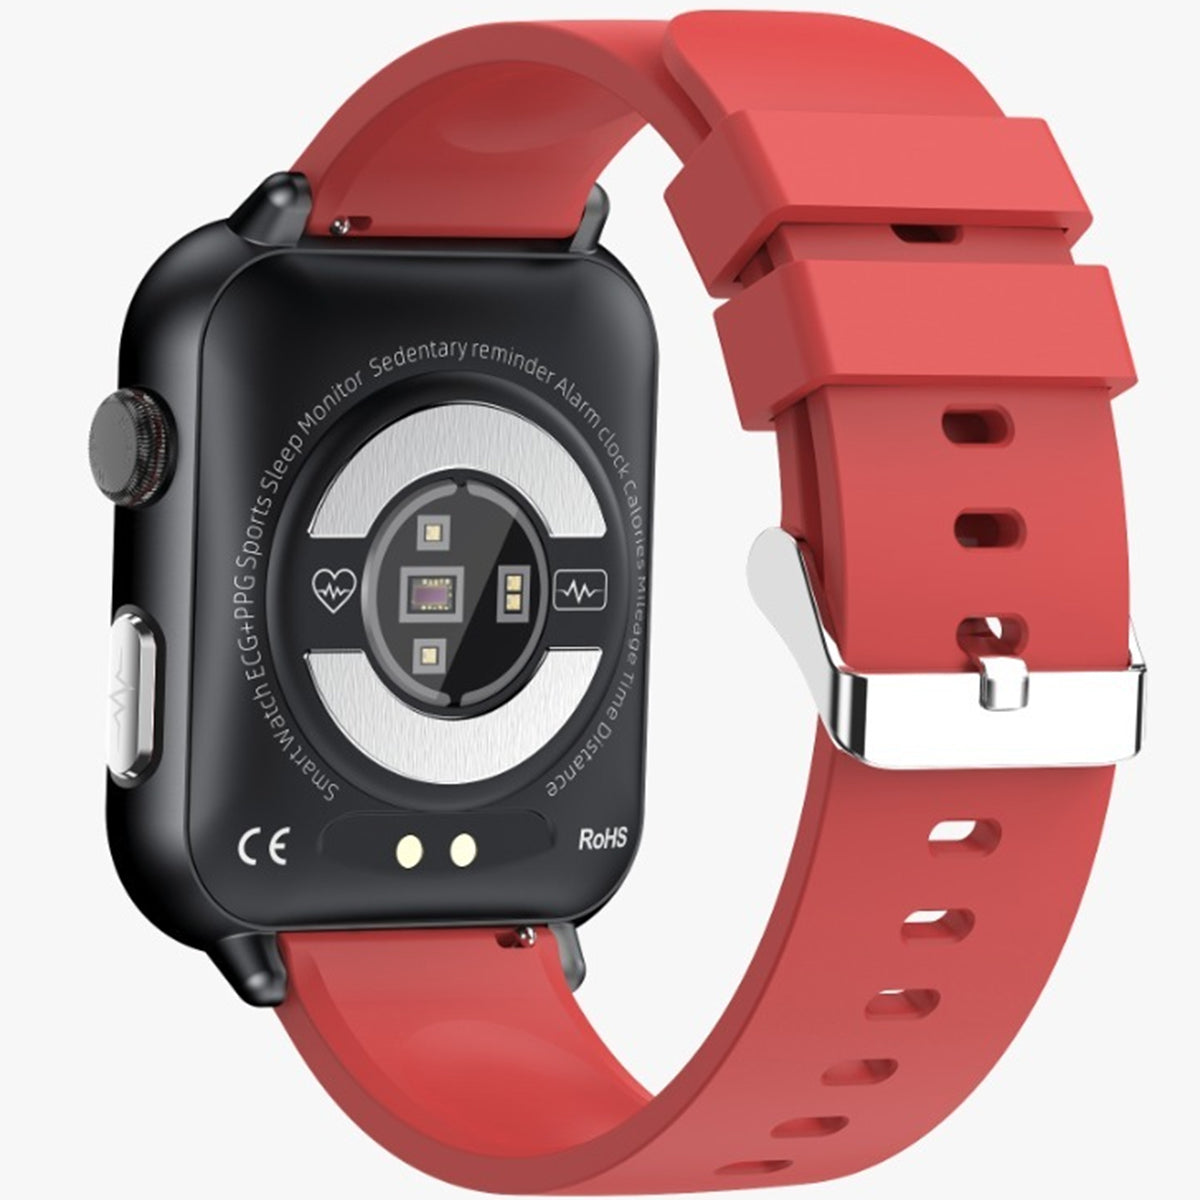 Fralugio Smart Watch Reloj Inteligente E200 Silicon Full Hd